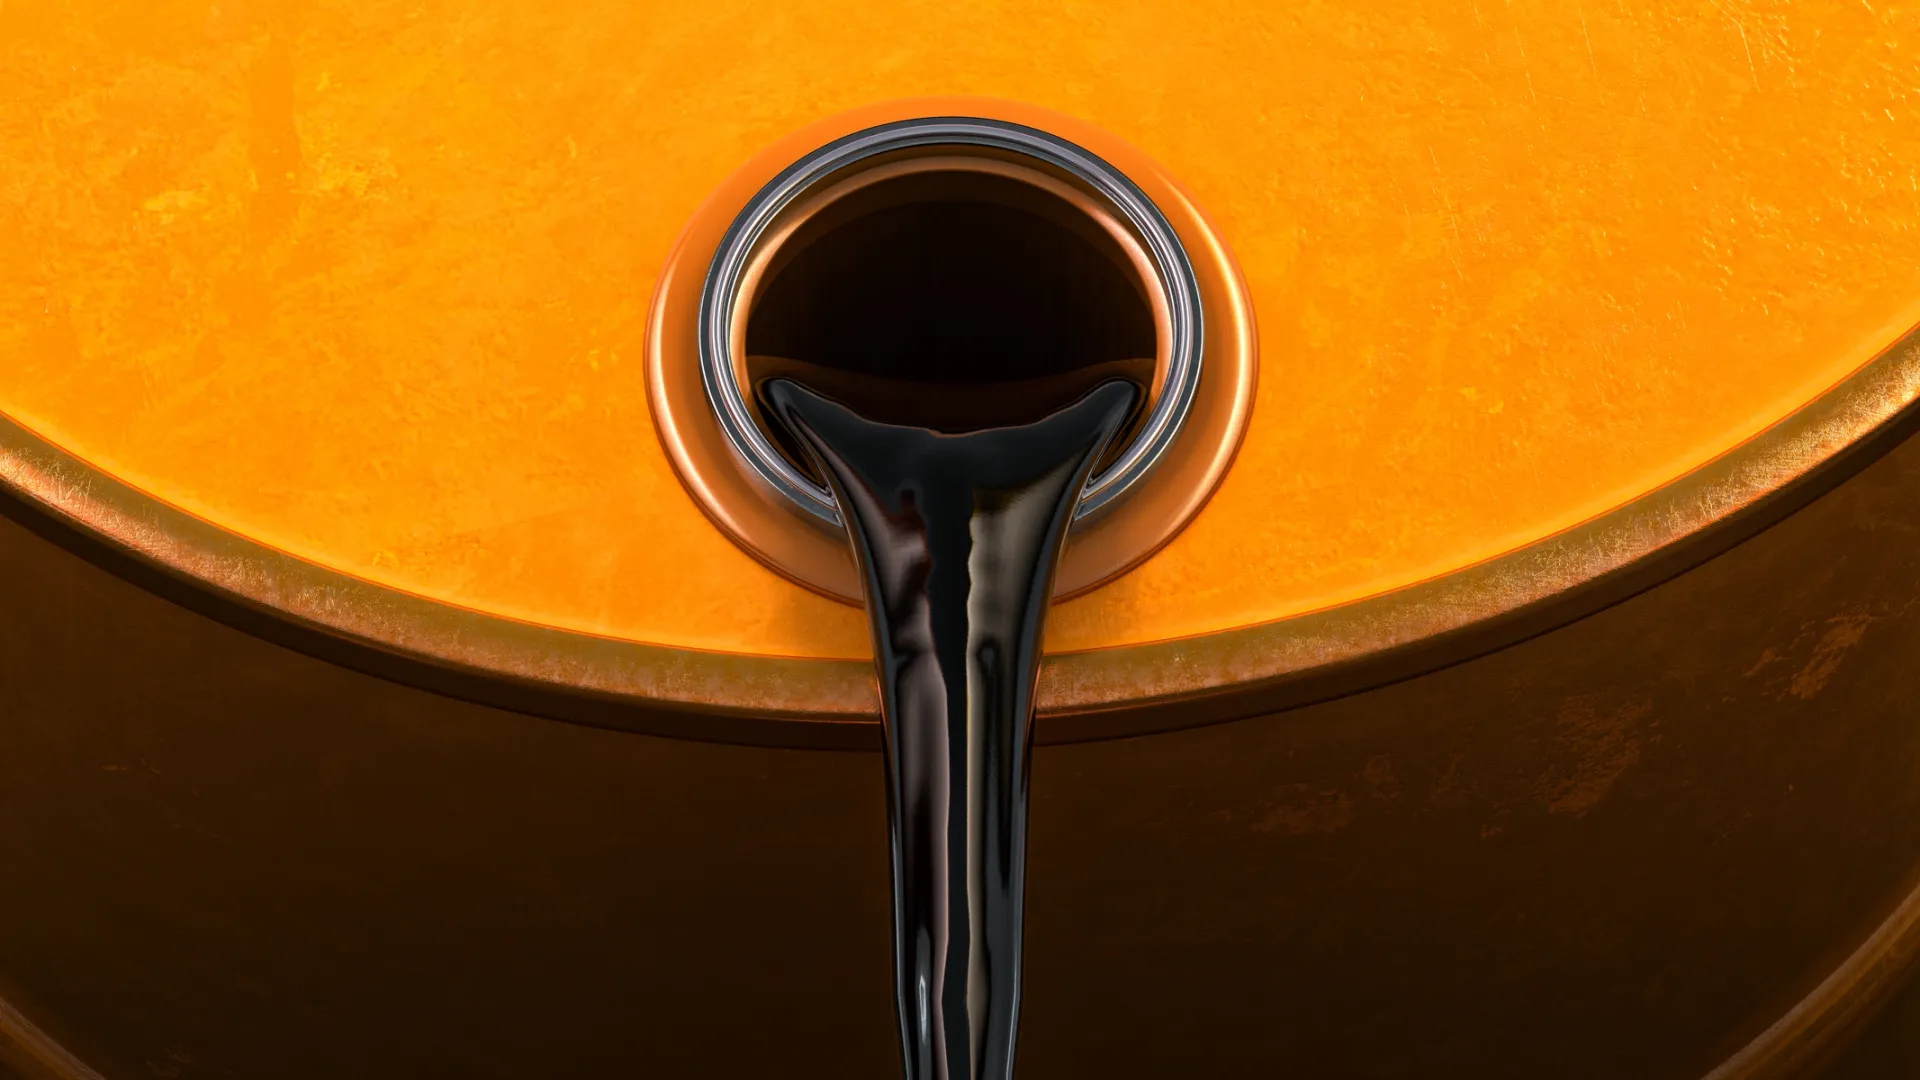 Энергетик Фролов: европейцы стремятся перевезти больше нефти до новых санкций. В ЯНАО нашли залежи «черного золота»